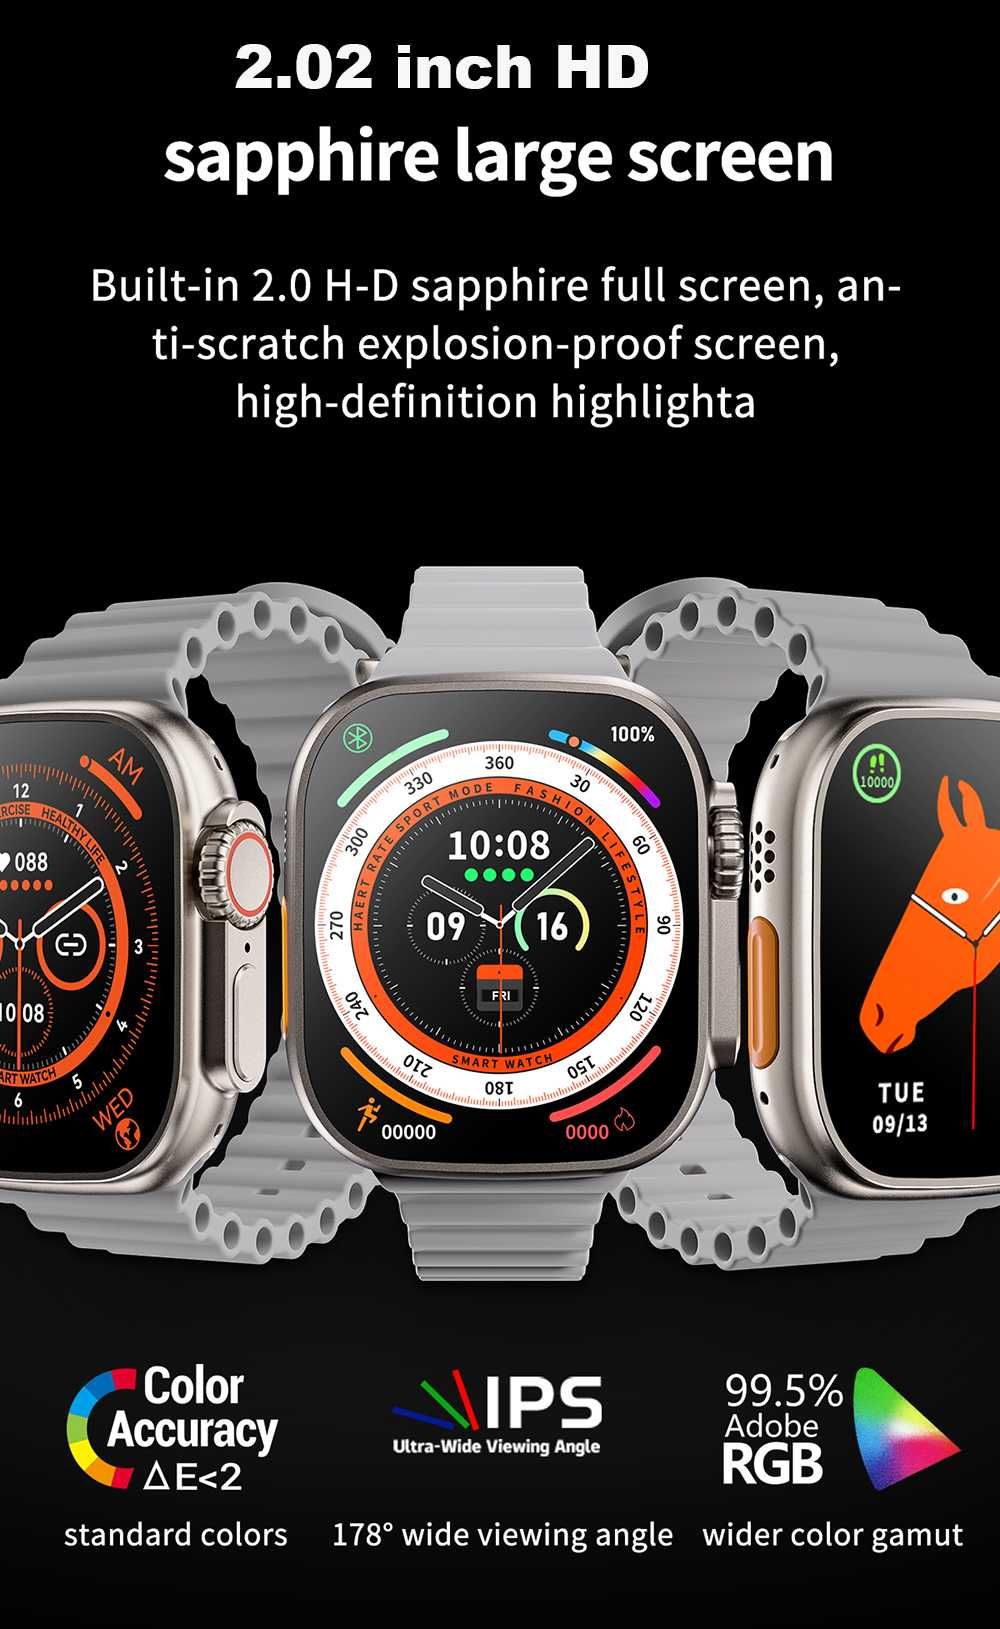 S8 Ultra Smartwatch rozmowy, sport, tętno, NFC i wiele innych funkcji